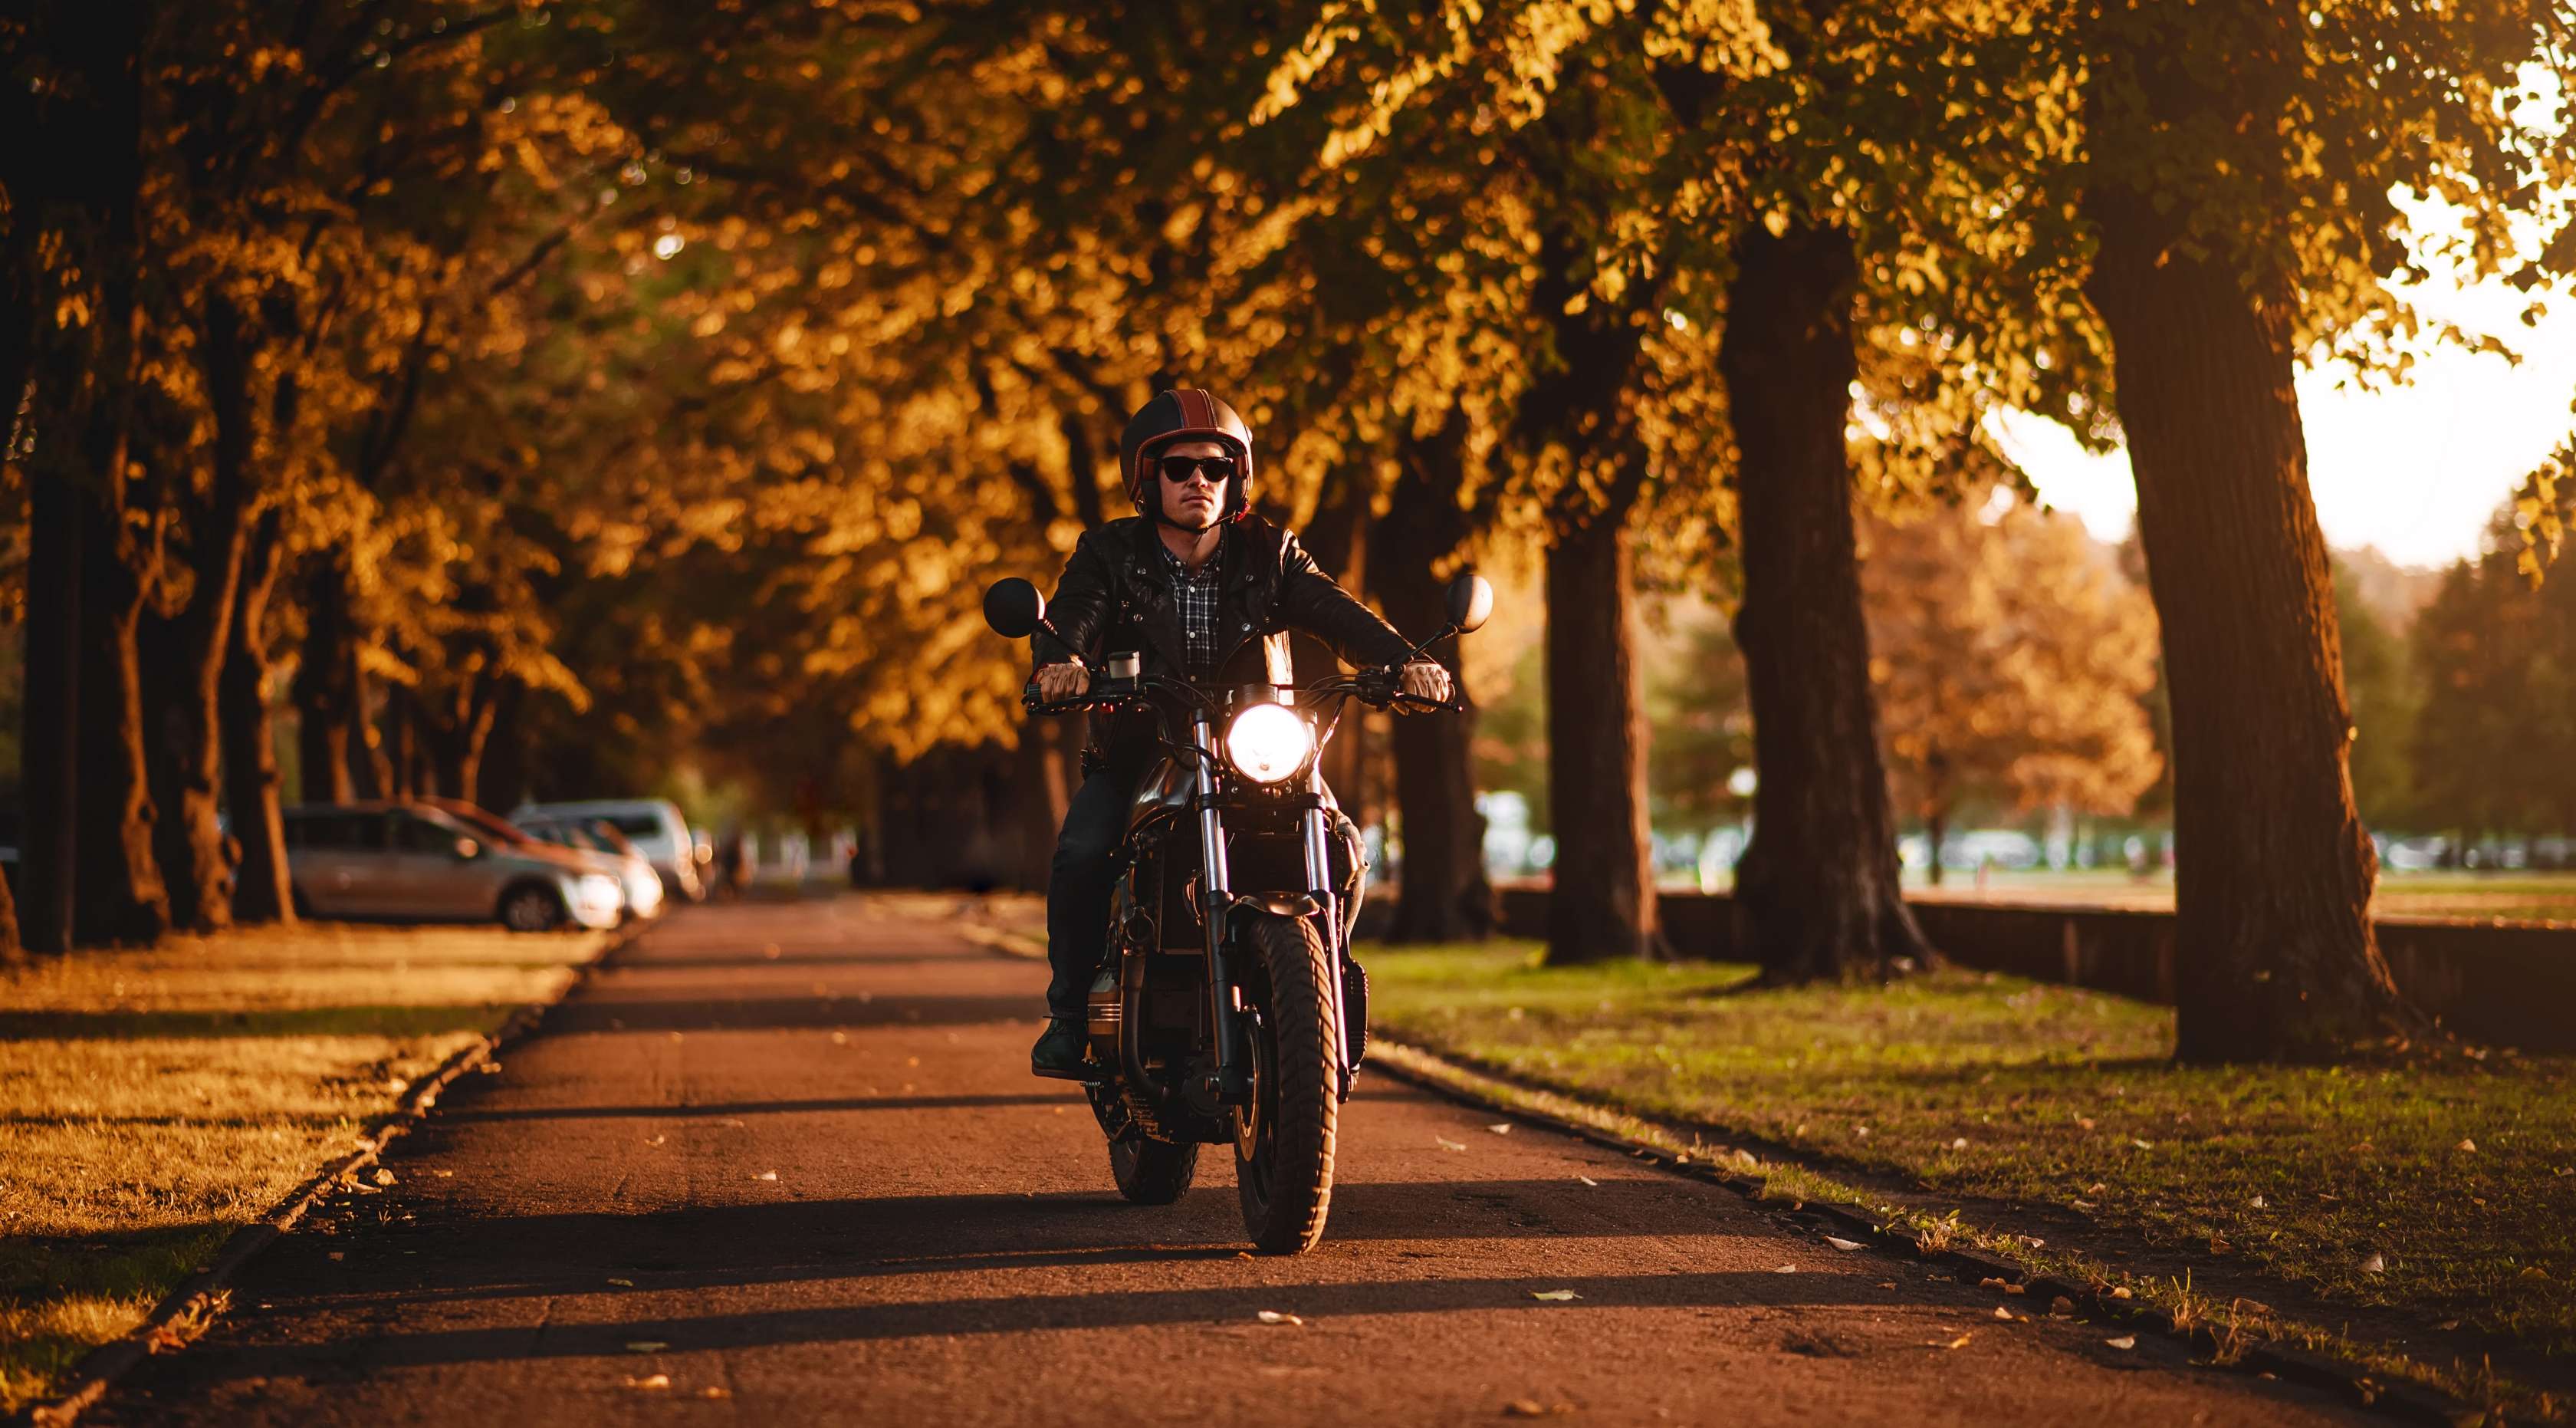 Allianz - Schadenfreiheitsklasse: Motorradfahrer fährt durch Baumallee